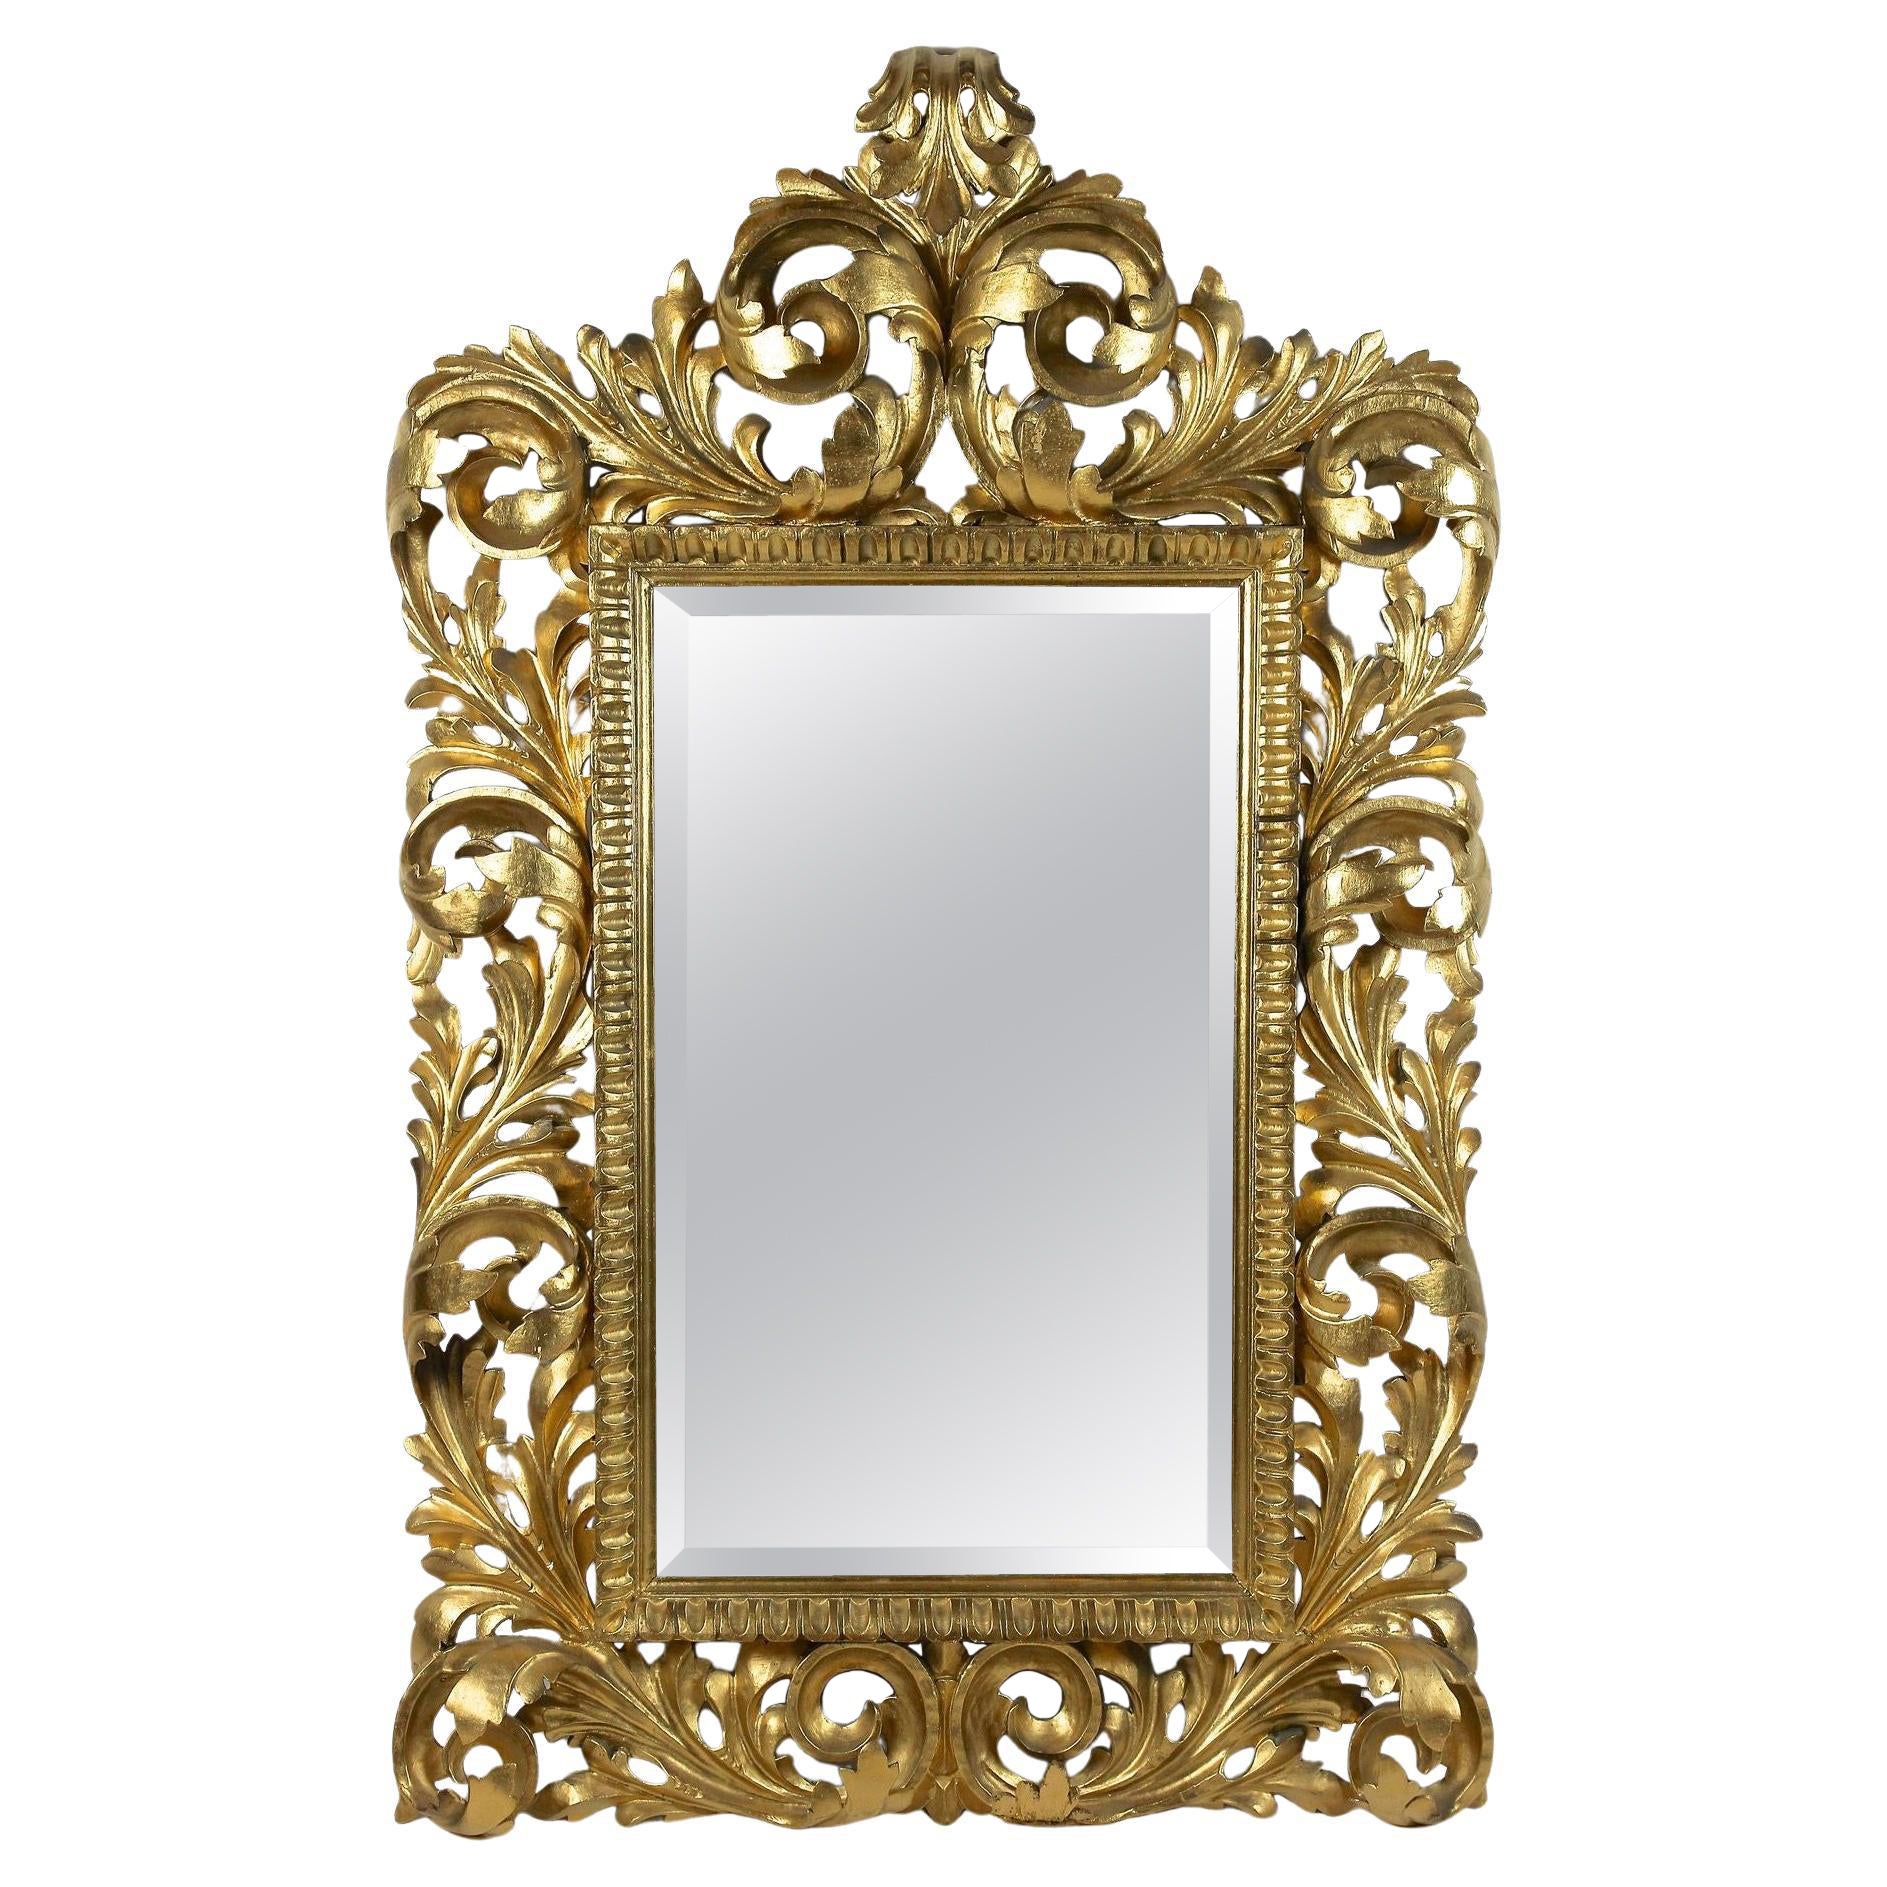 Vergoldeter Florentine-Spiegel des 19. Jahrhunderts, durchbrochen gearbeitet, Italien um 1890